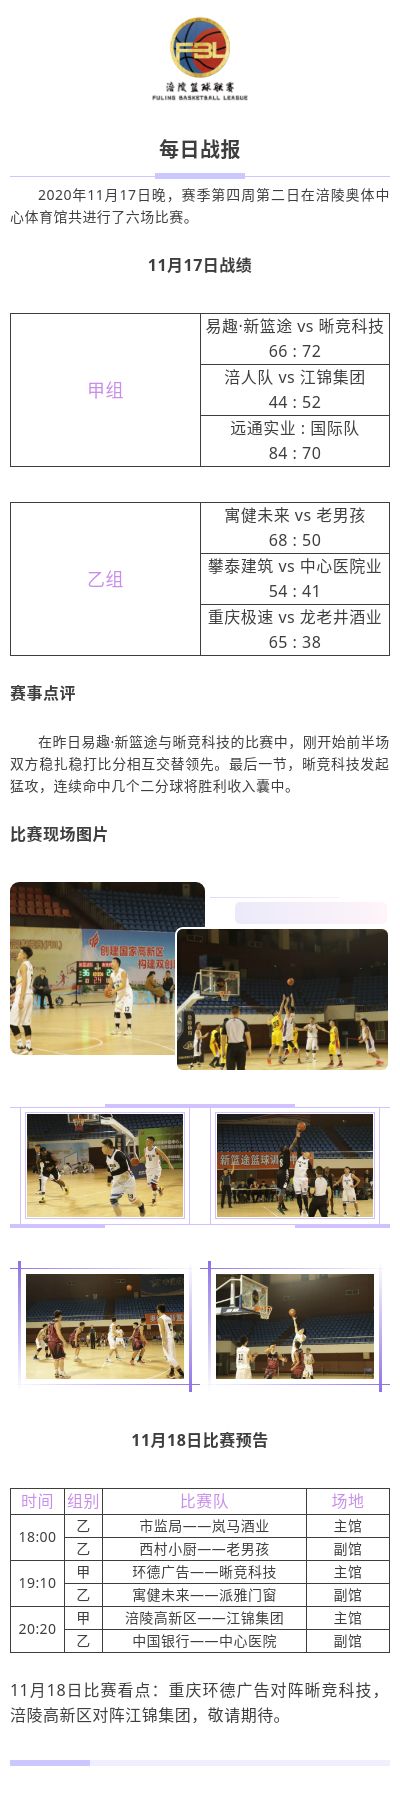 涪陵高新区·涪陵篮球联赛（FBL）2020赛季每日战报11.17